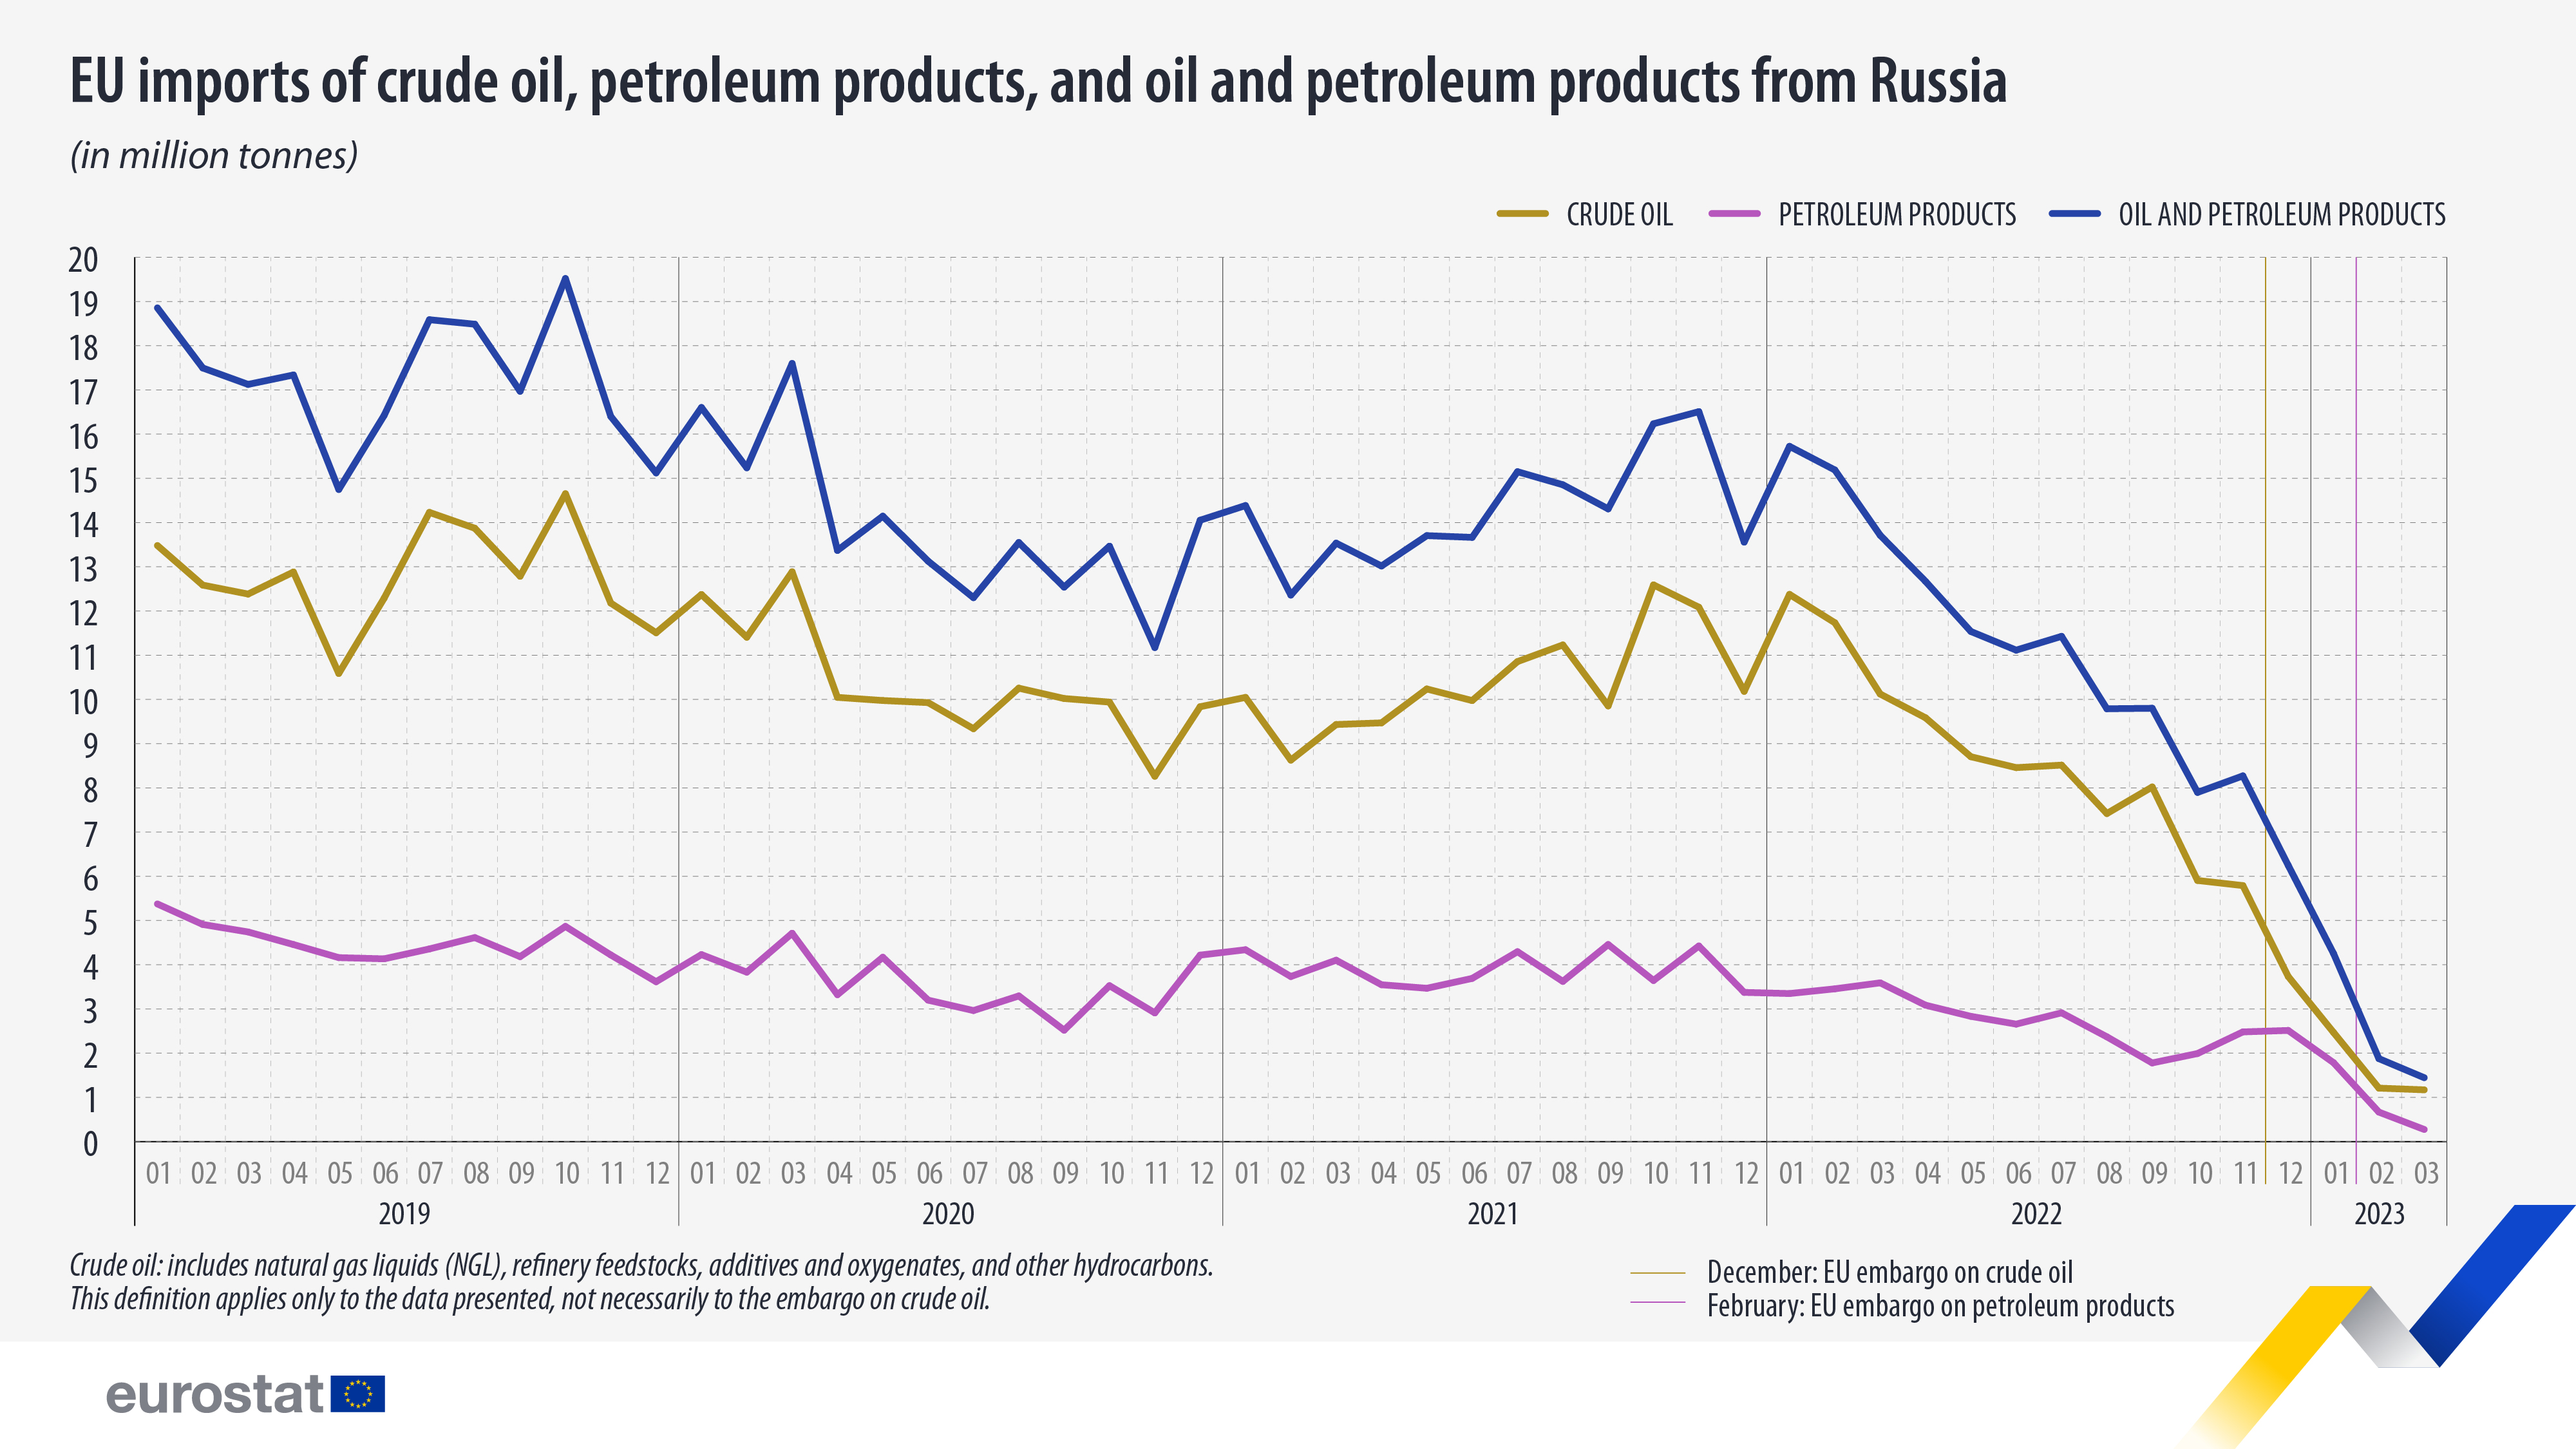 Γραμμικό γράφημα: Εισαγωγές αργού πετρελαίου, προϊόντων πετρελαίου και πετρελαίου και προϊόντων πετρελαίου από τη Ρωσία, σε εκατομμύρια τόνους, μεταξύ Ιανουαρίου 2019 και Μαρτίου 2023